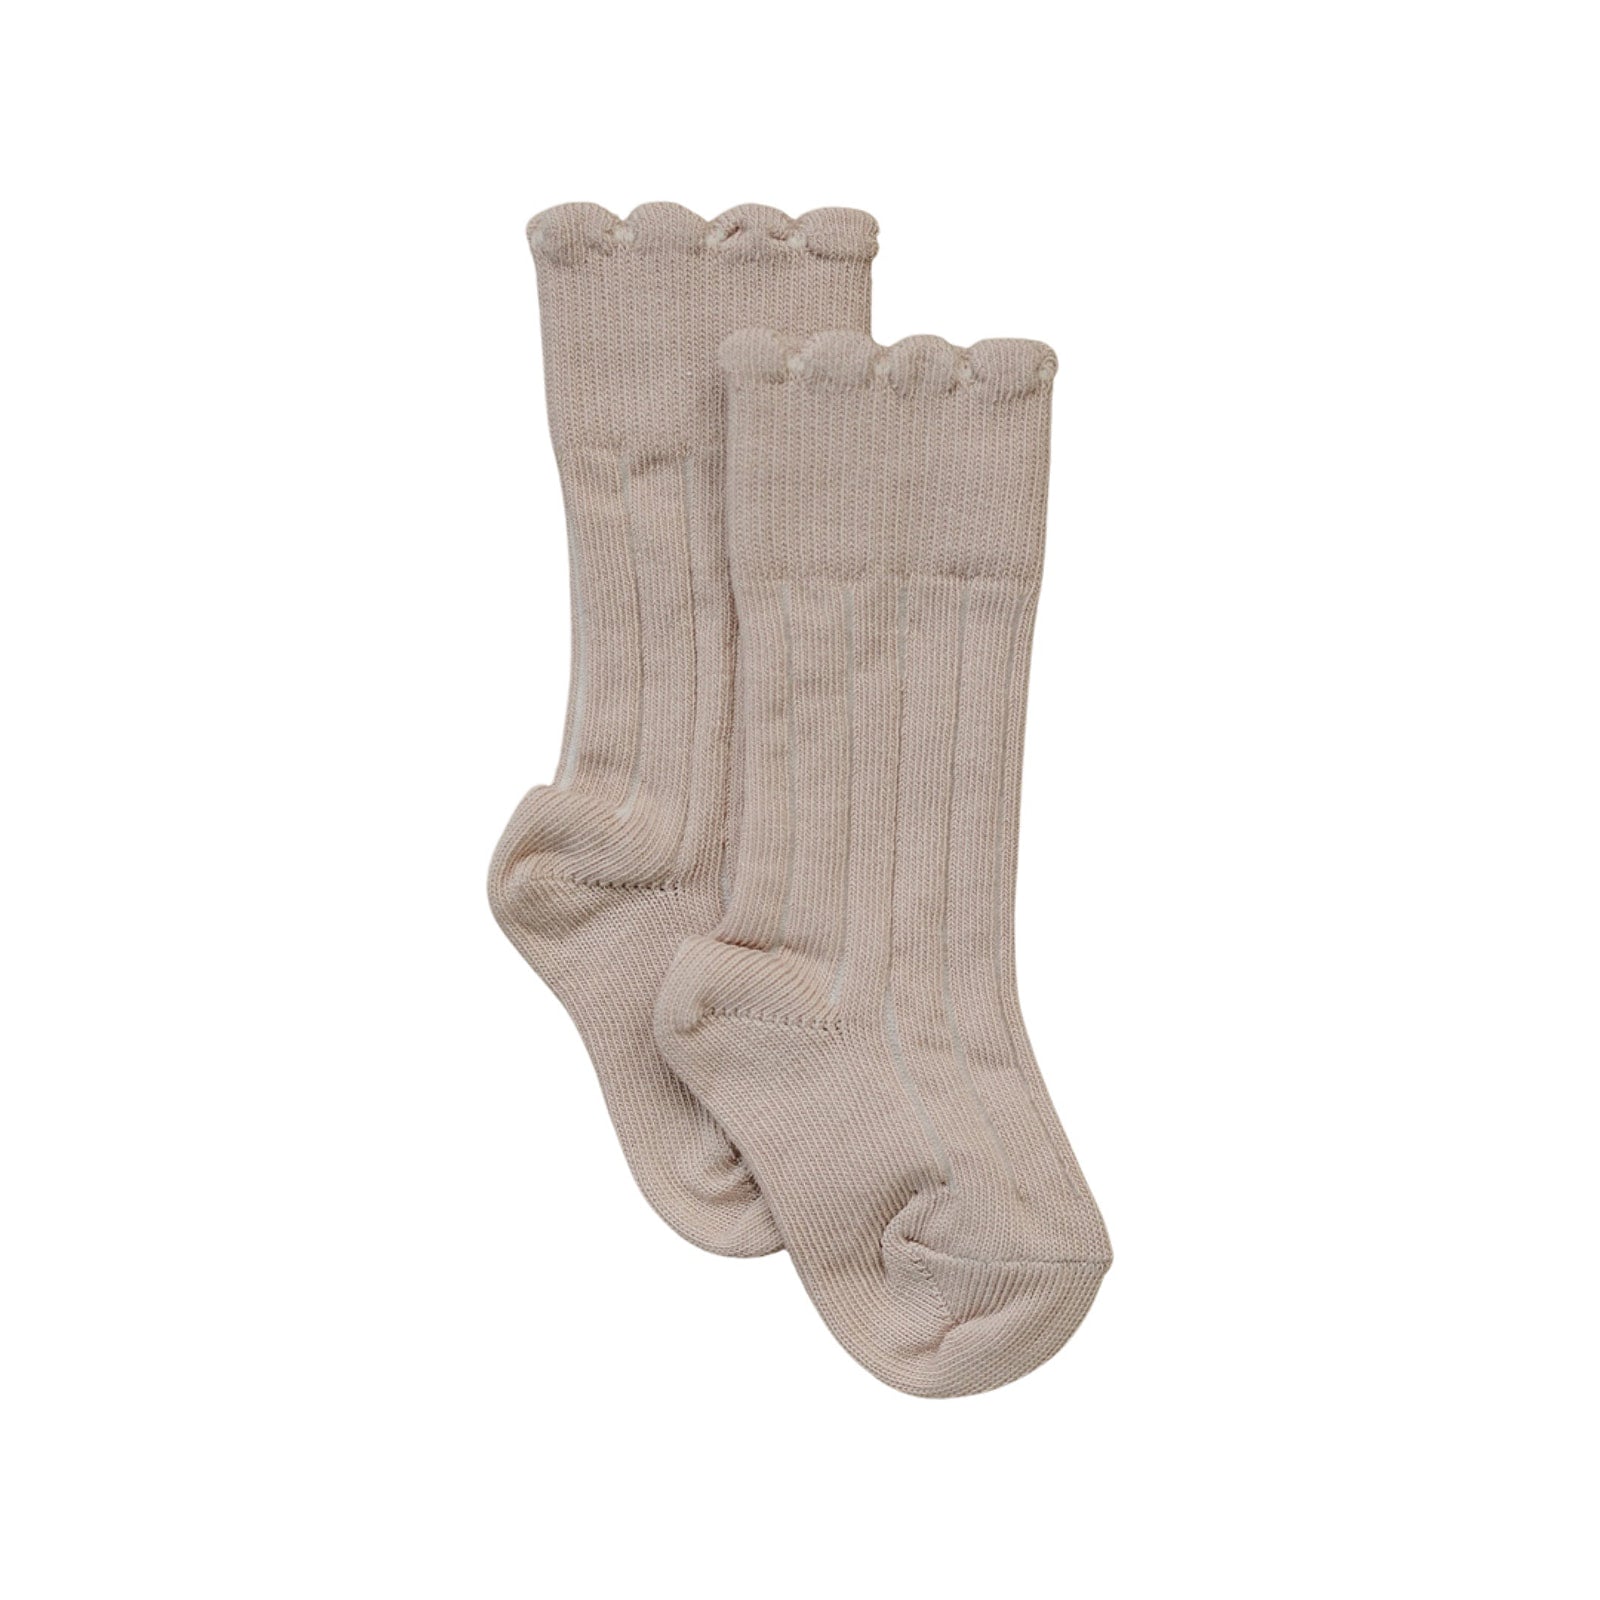 Olivia J Stockings and Socks – Olivia J.